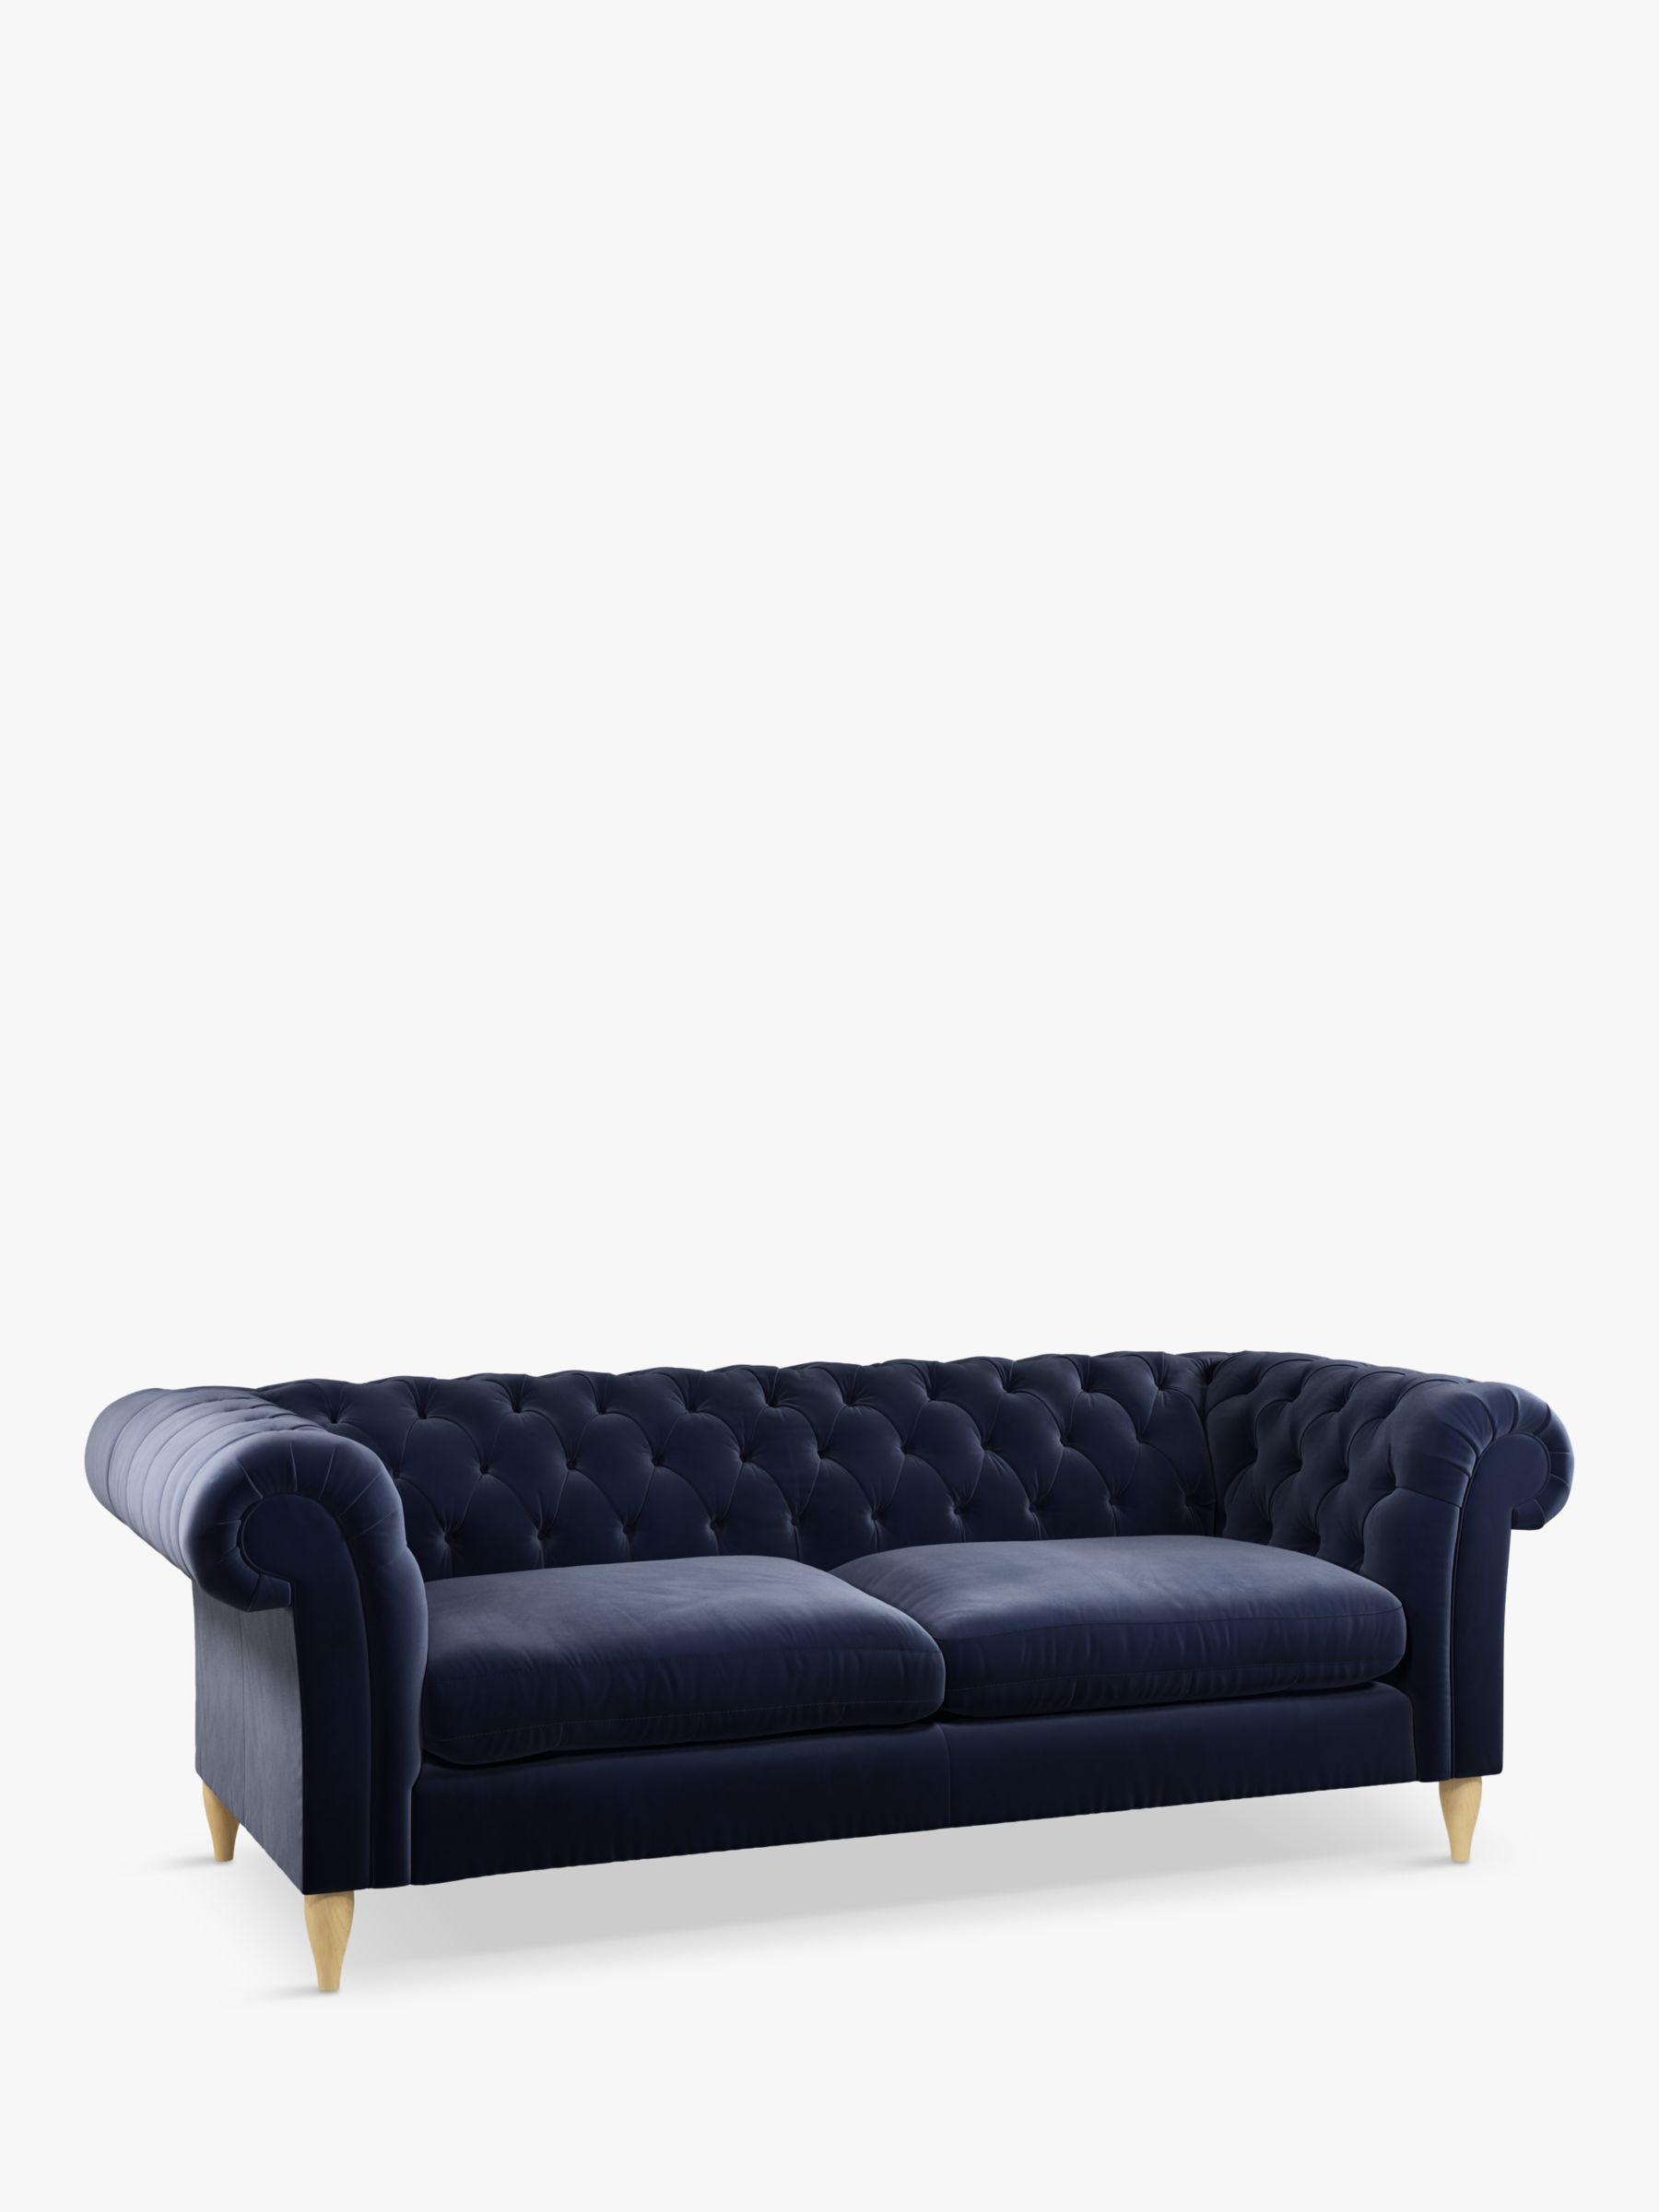 Cromwell Range, John Lewis Cromwell Grand 4 Seater Sofa, Light Leg, Smooth Velvet Navy